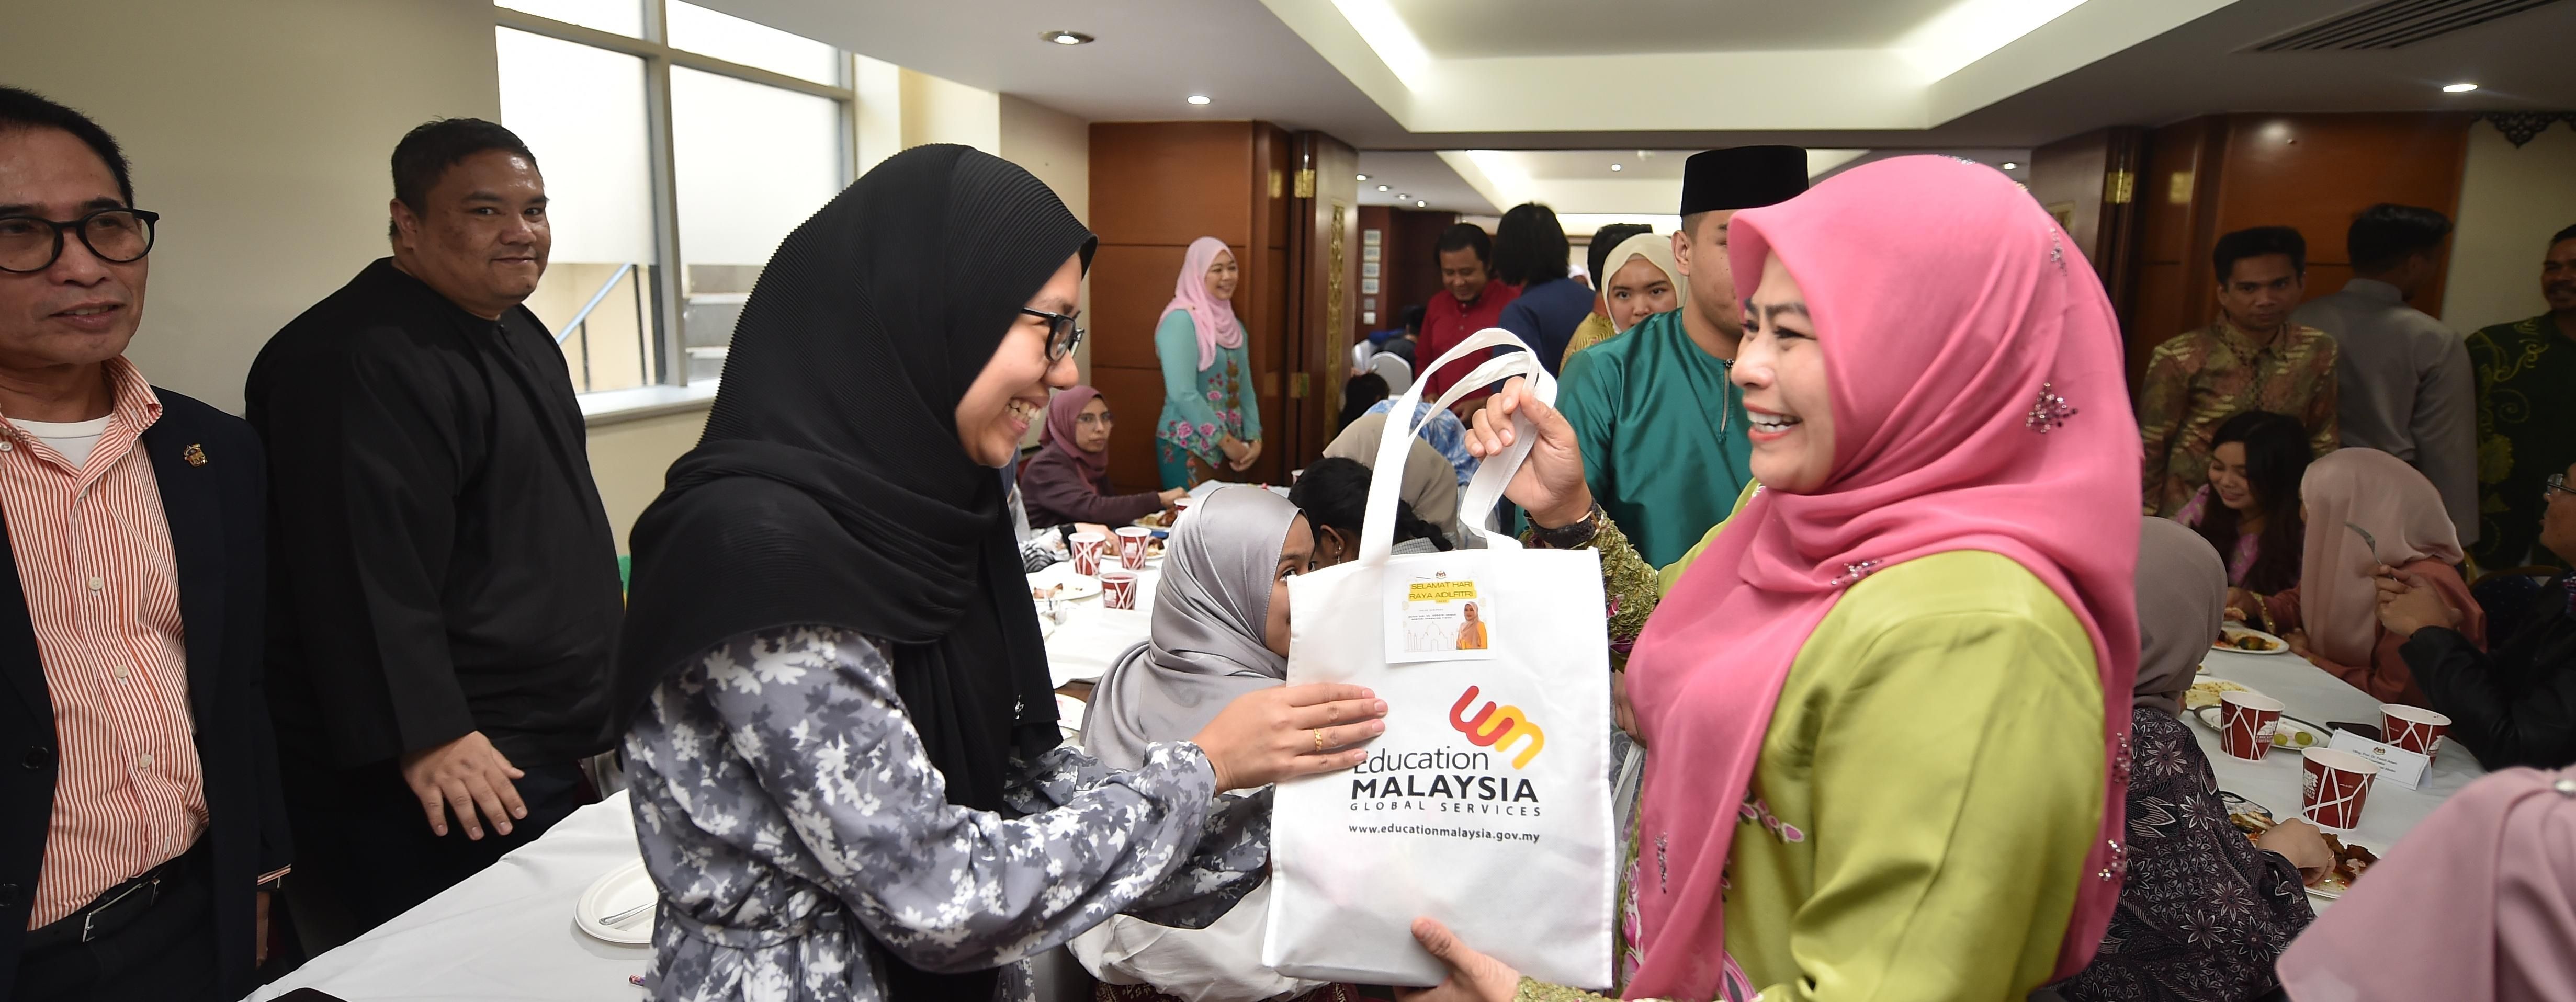 YBM Hadiri Majlis Aidilfitri Bersama Pelajar Malaysia